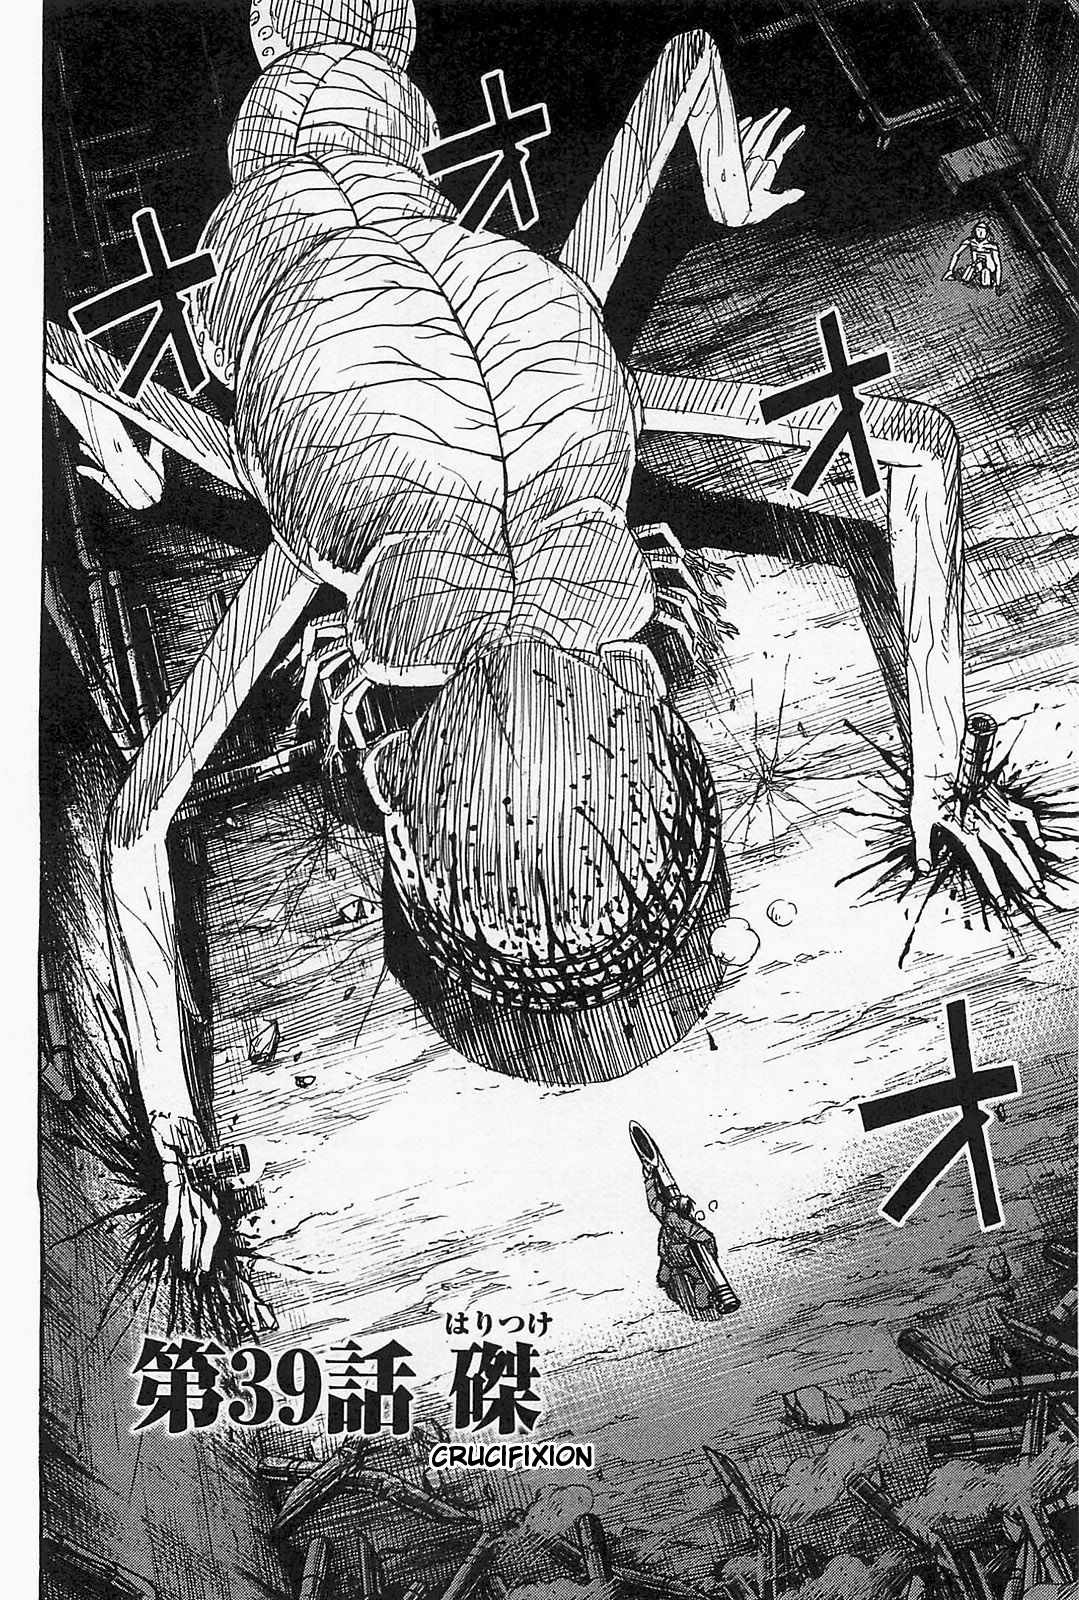 Higanjima Saigo no 47 Hiai Vol. 4 Ch. 39 Crucifixion